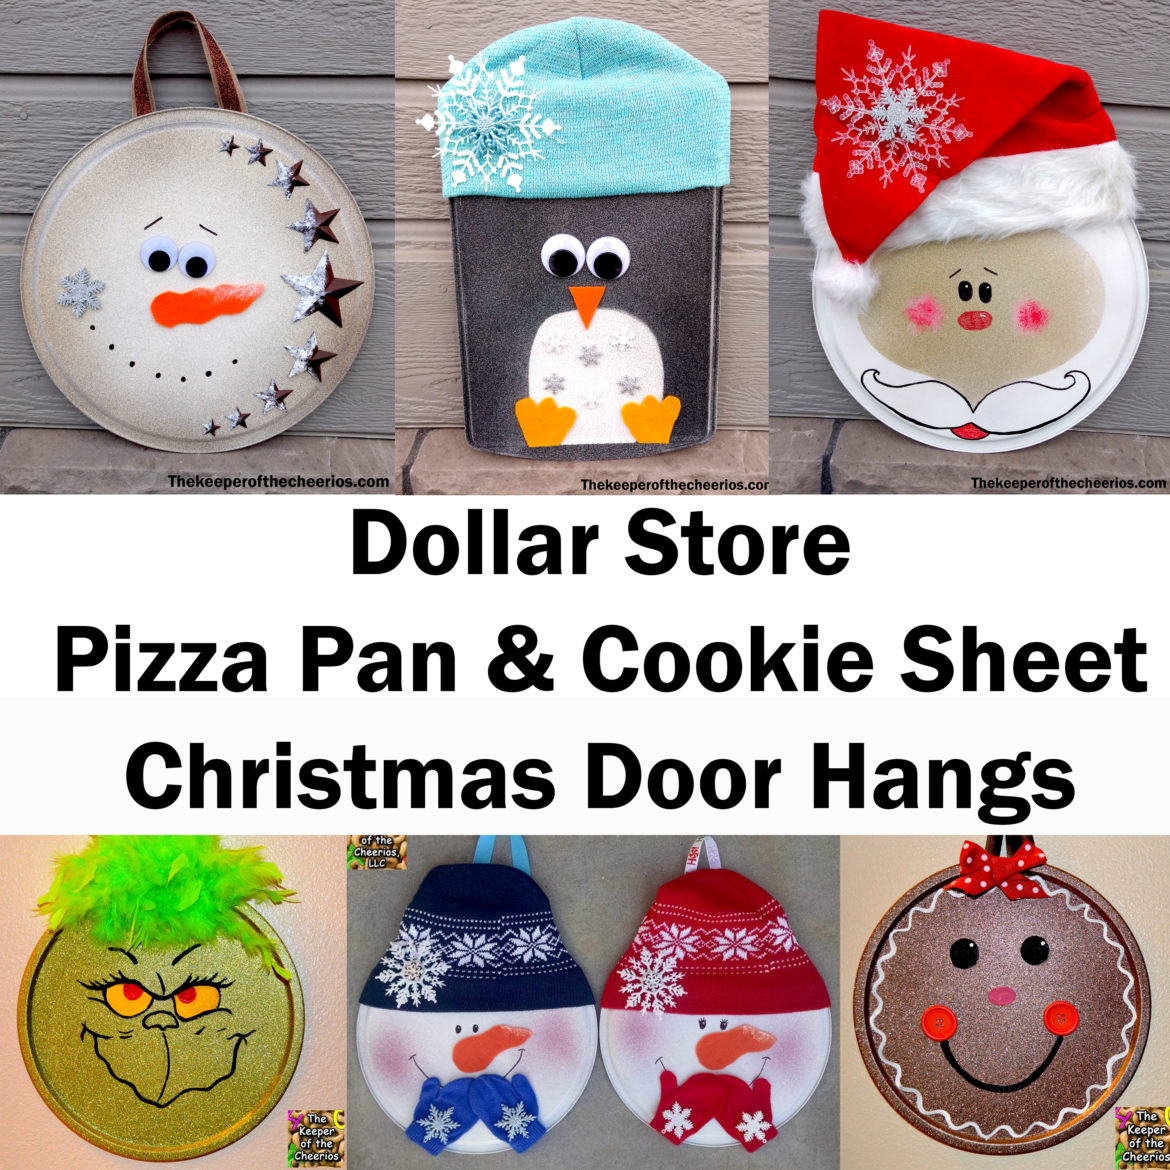 http://www.thekeeperofthecheerios.com/wp-content/uploads/2017/10/Dollar-Store-Pizza-Pan-Christmas-Door-hangs.jpg